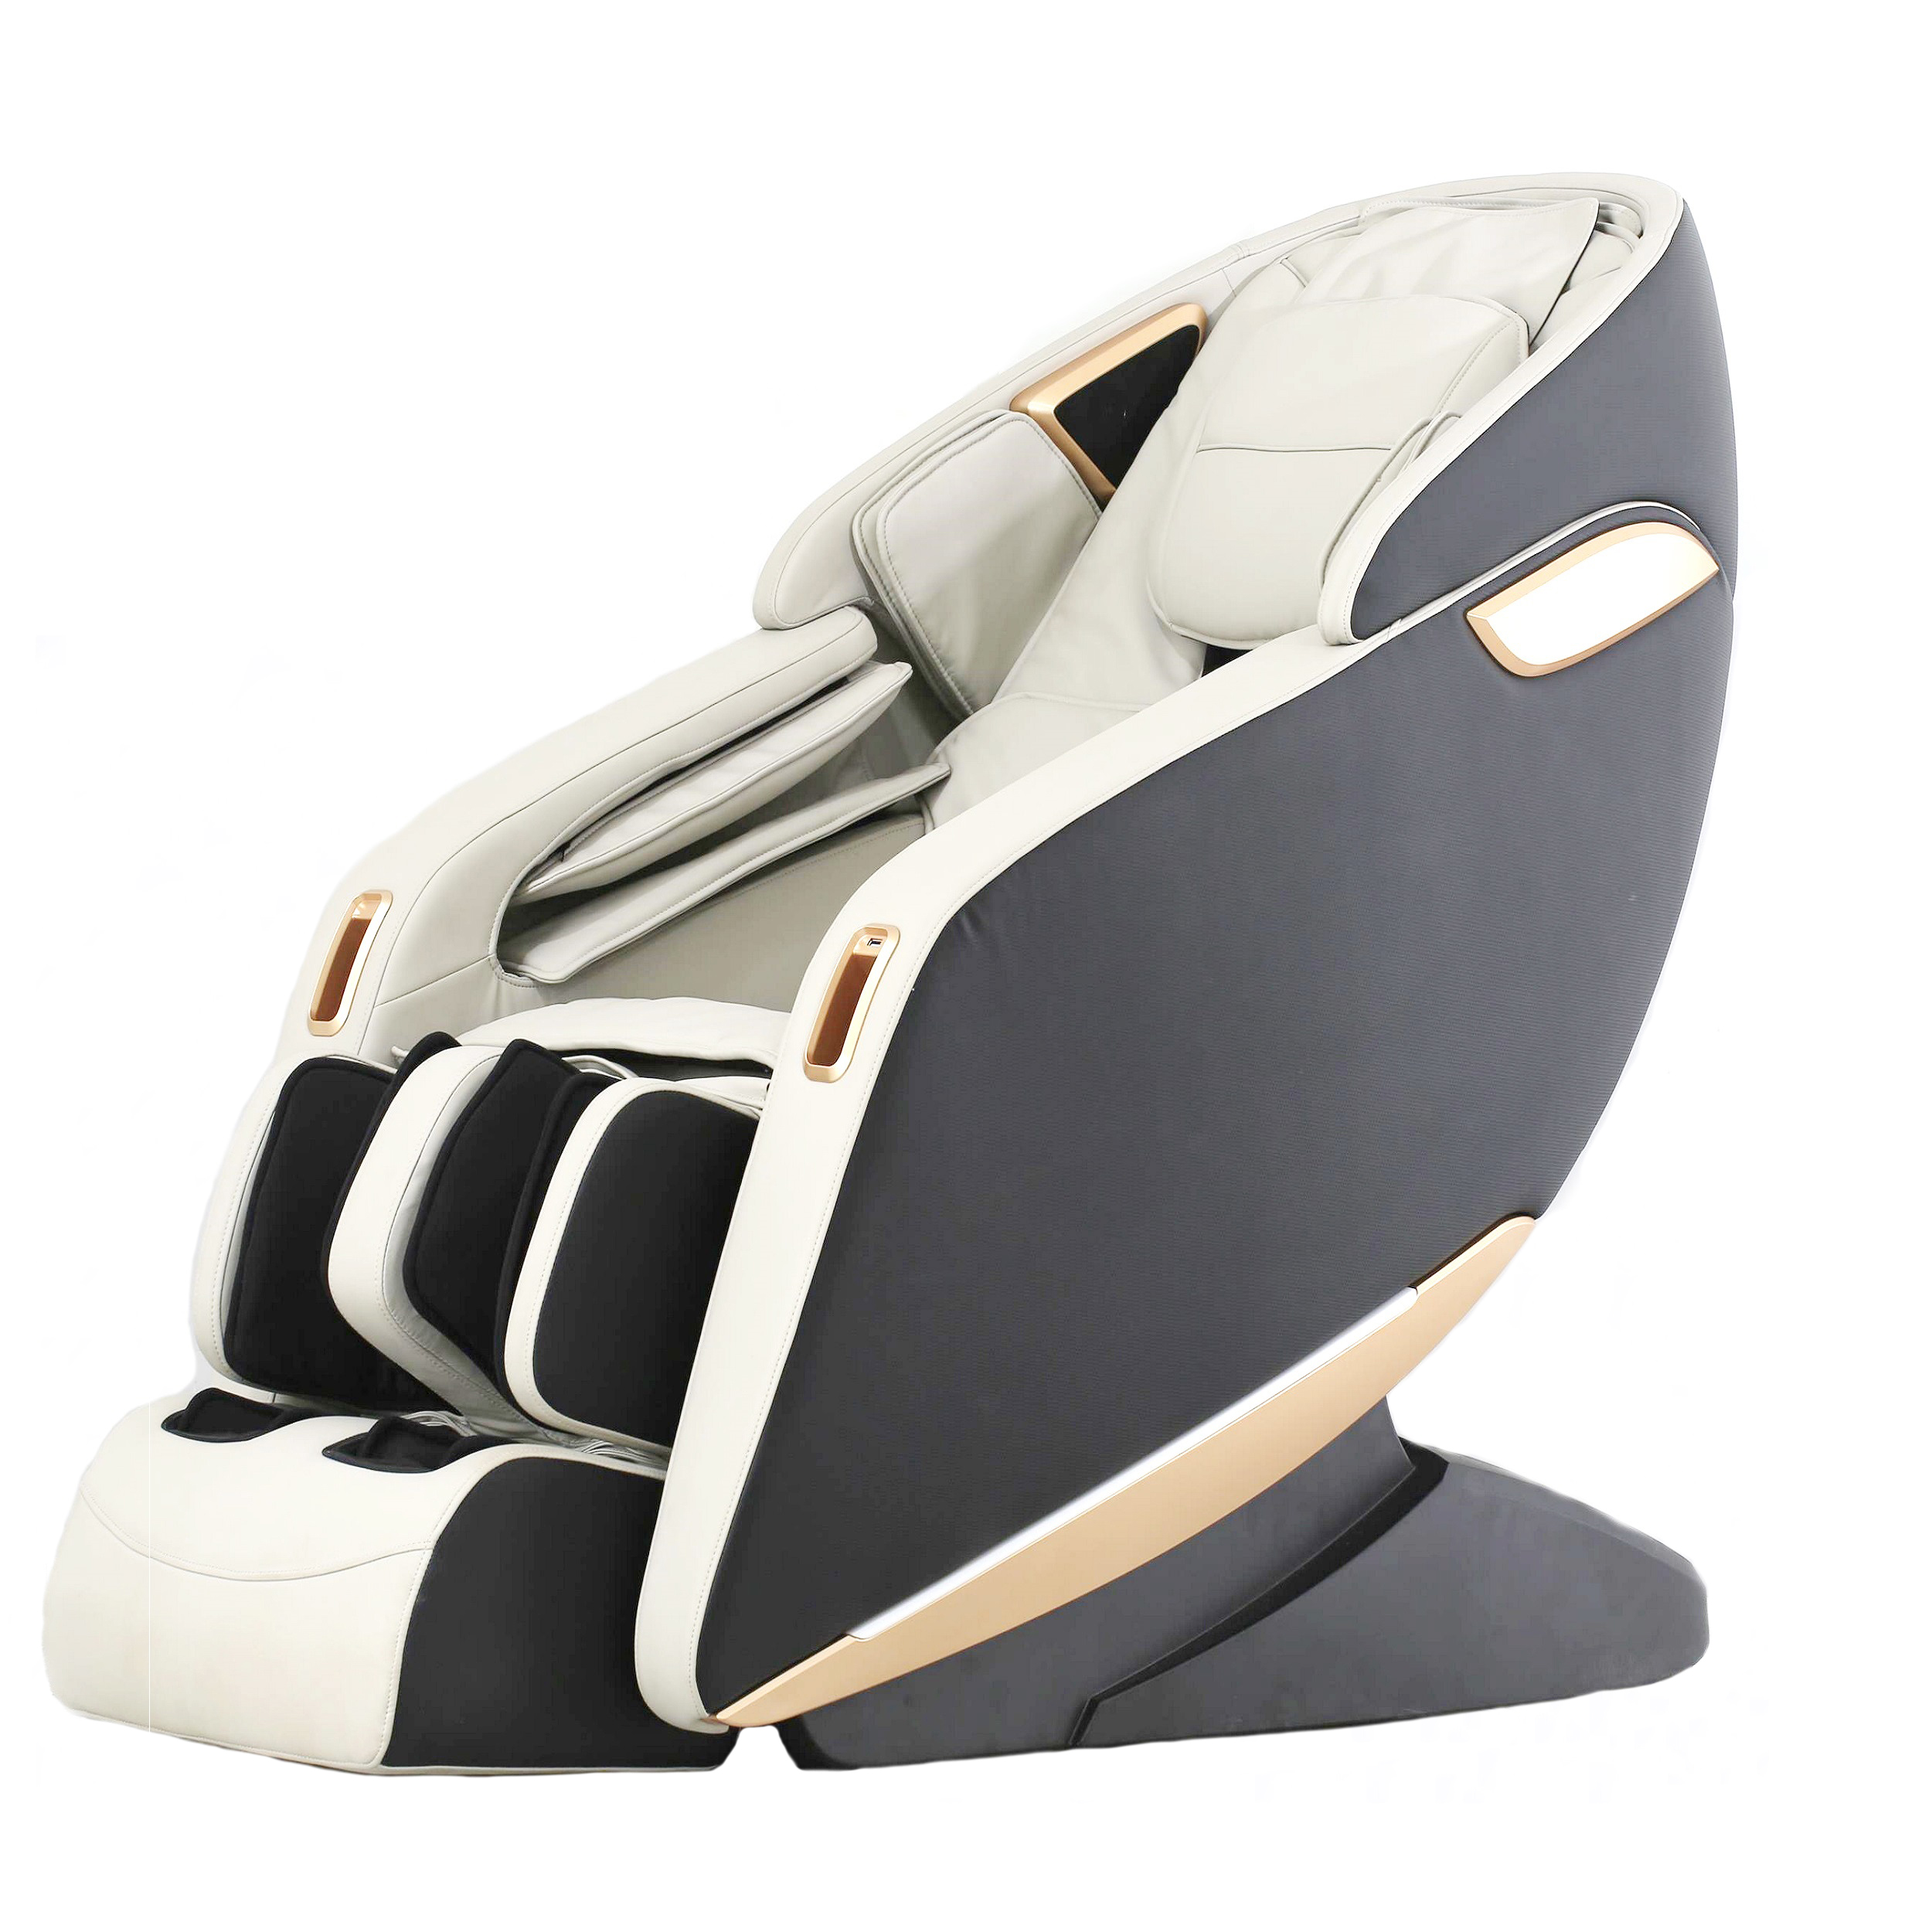 صندلی ماساژ برقی مدل amig02